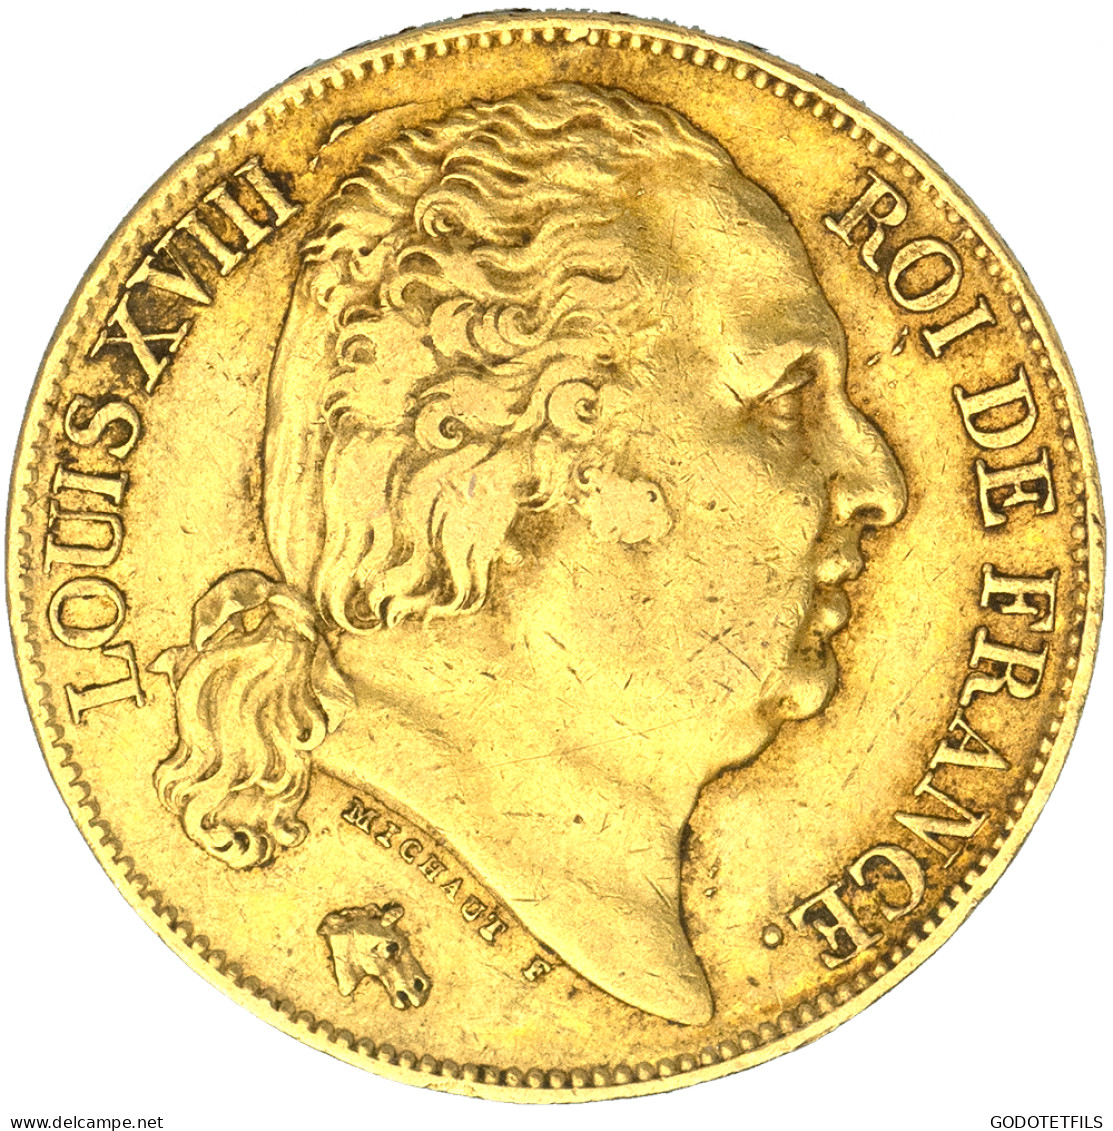 Louis XVIII-20 Francs 1824 Paris - 20 Francs (gold)